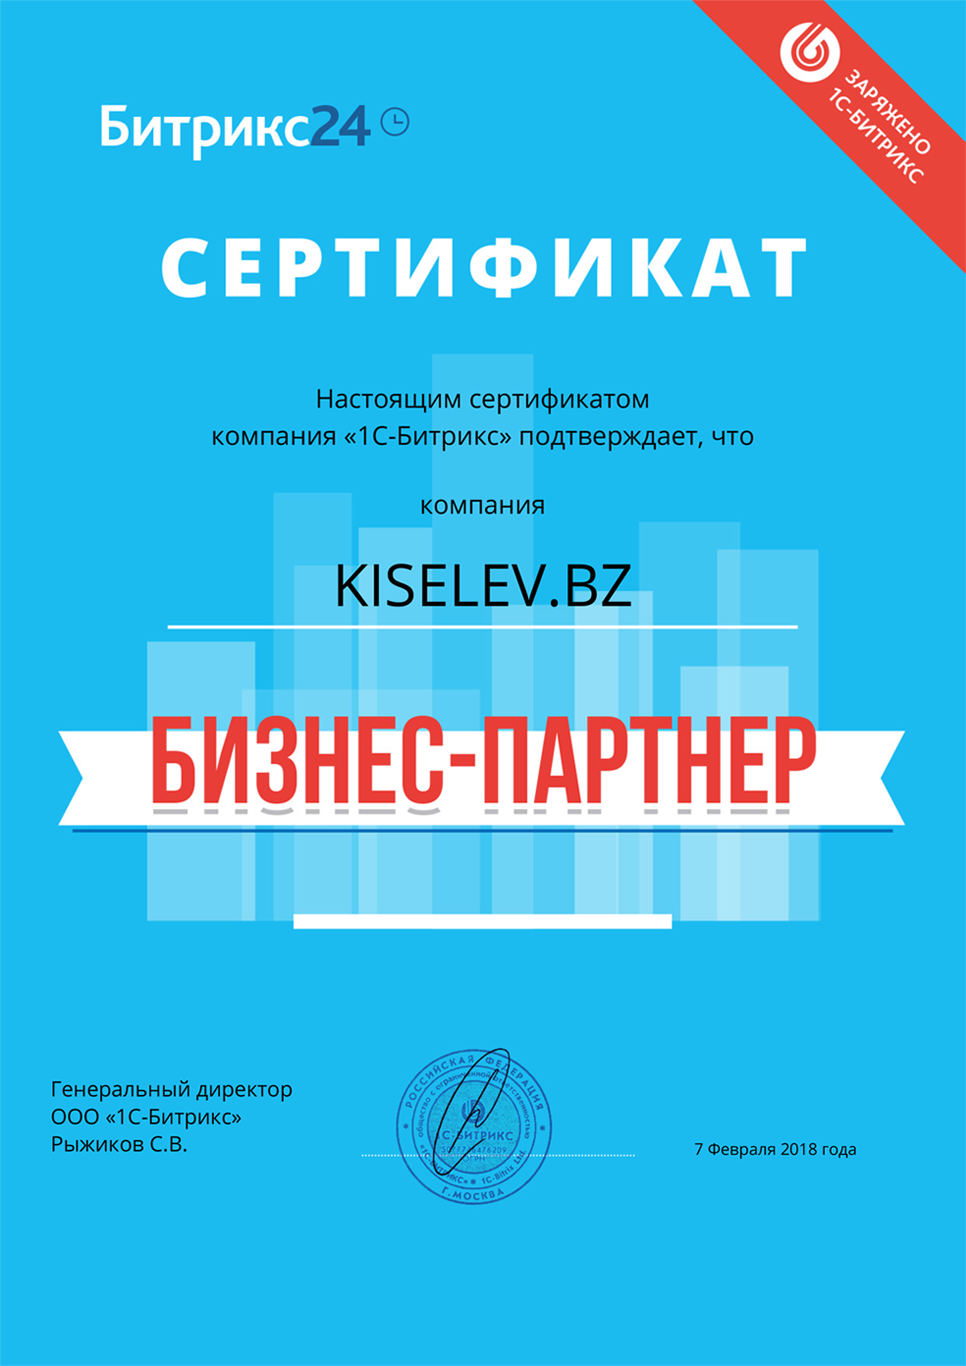 Сертификат партнёра по АМОСРМ в Усть-Лабинске